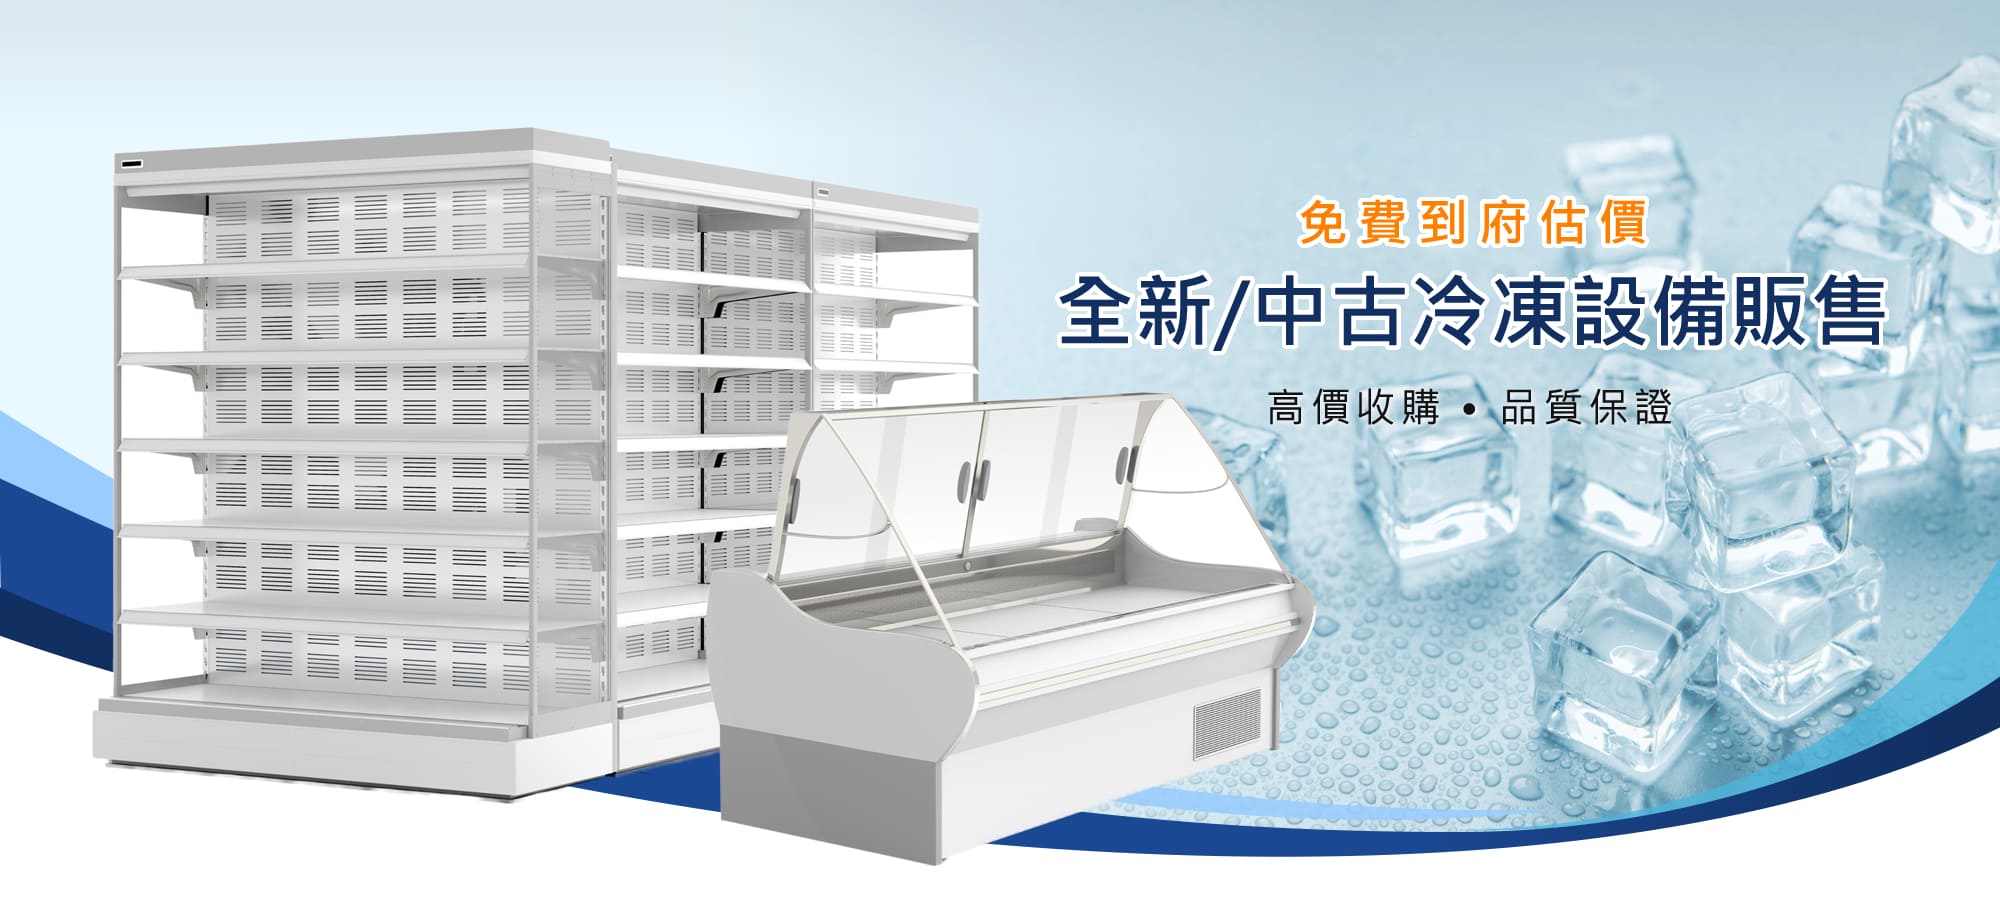 新北冷凍櫃,利連冷凍工程行0926-030550